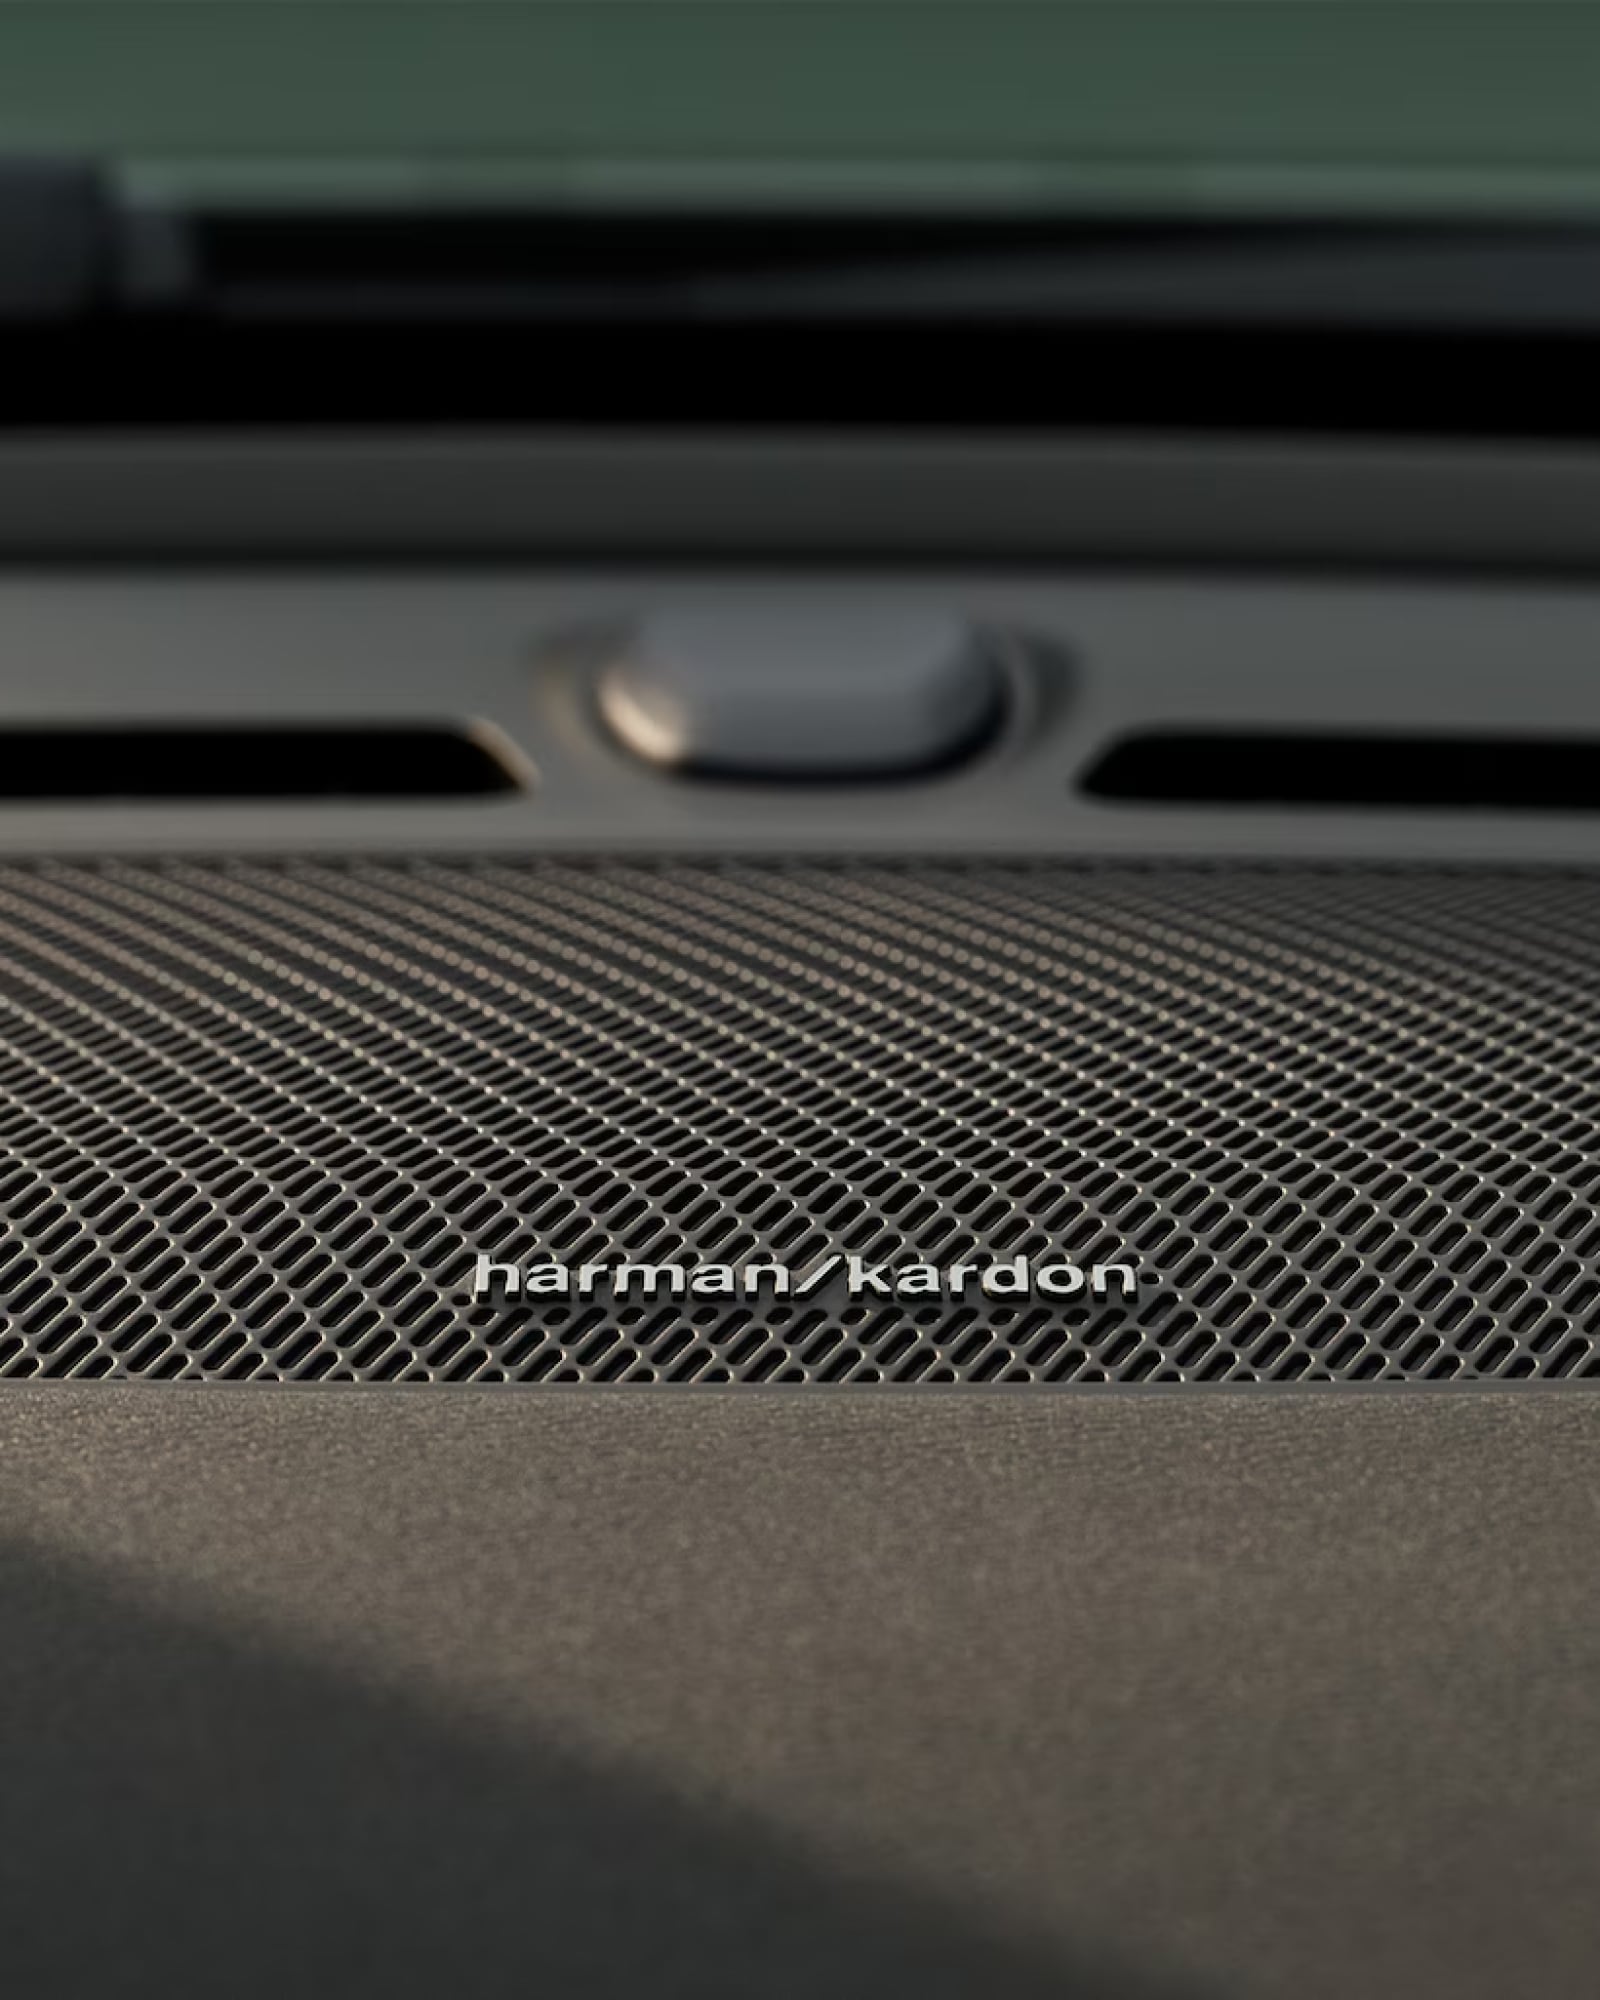 Λεπτομερής απεικόνιση του ηχείου Harman Kardon σε ένα Volvo XC40.